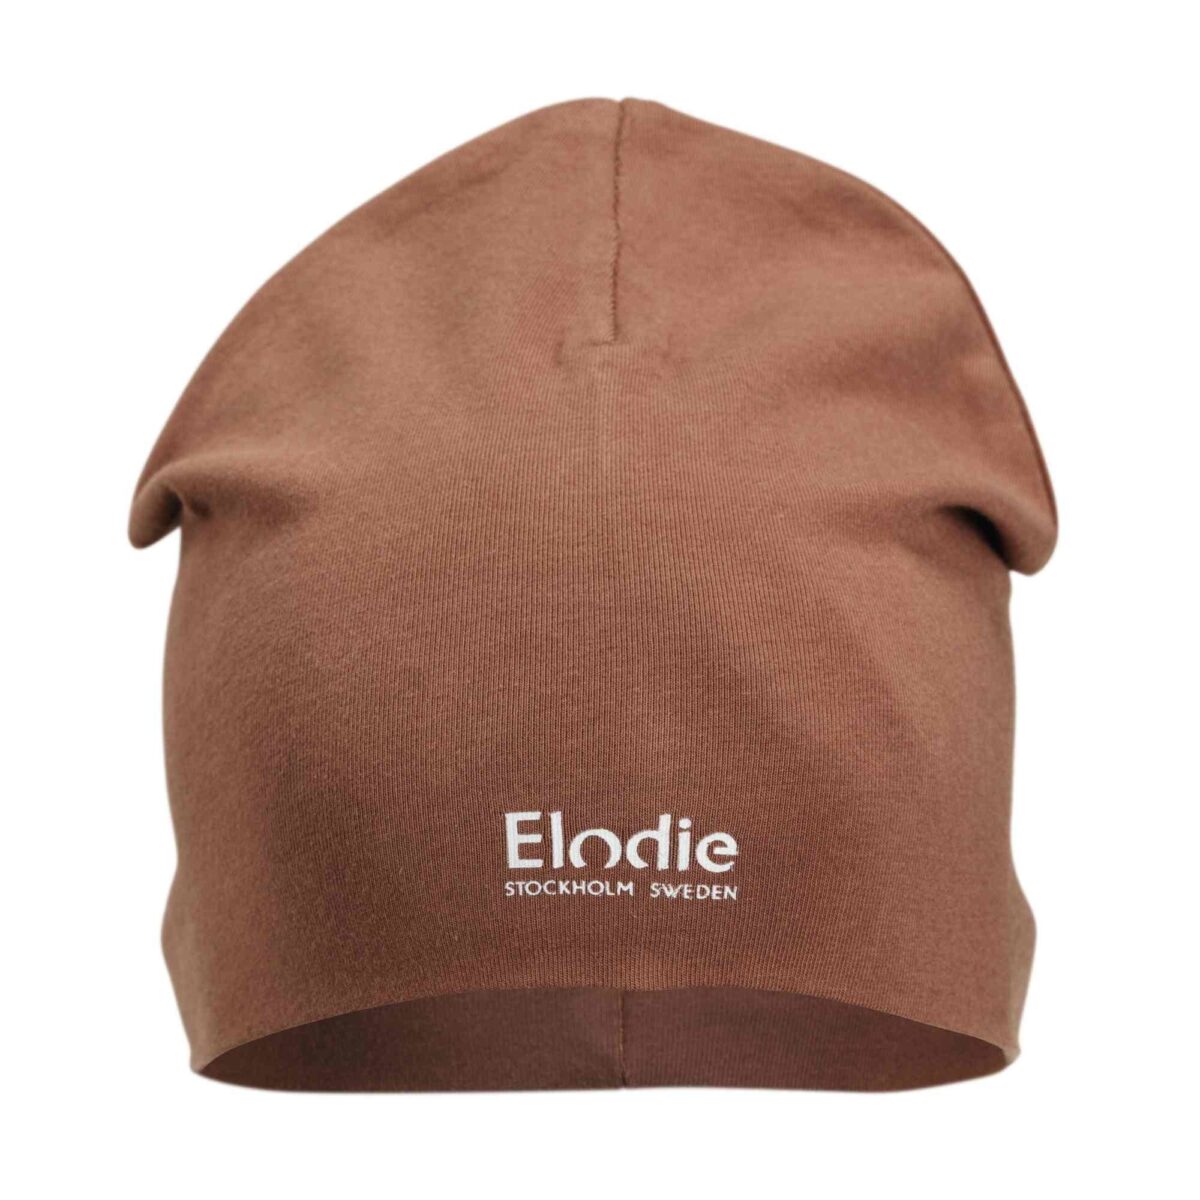 Elodie Details - Logo Beanie - Burned Clay 6-12 Months - Ubrania I Akcesoria &Gt; Ubrania &Gt; Ubrania Dla Dzieci I Niemowląt